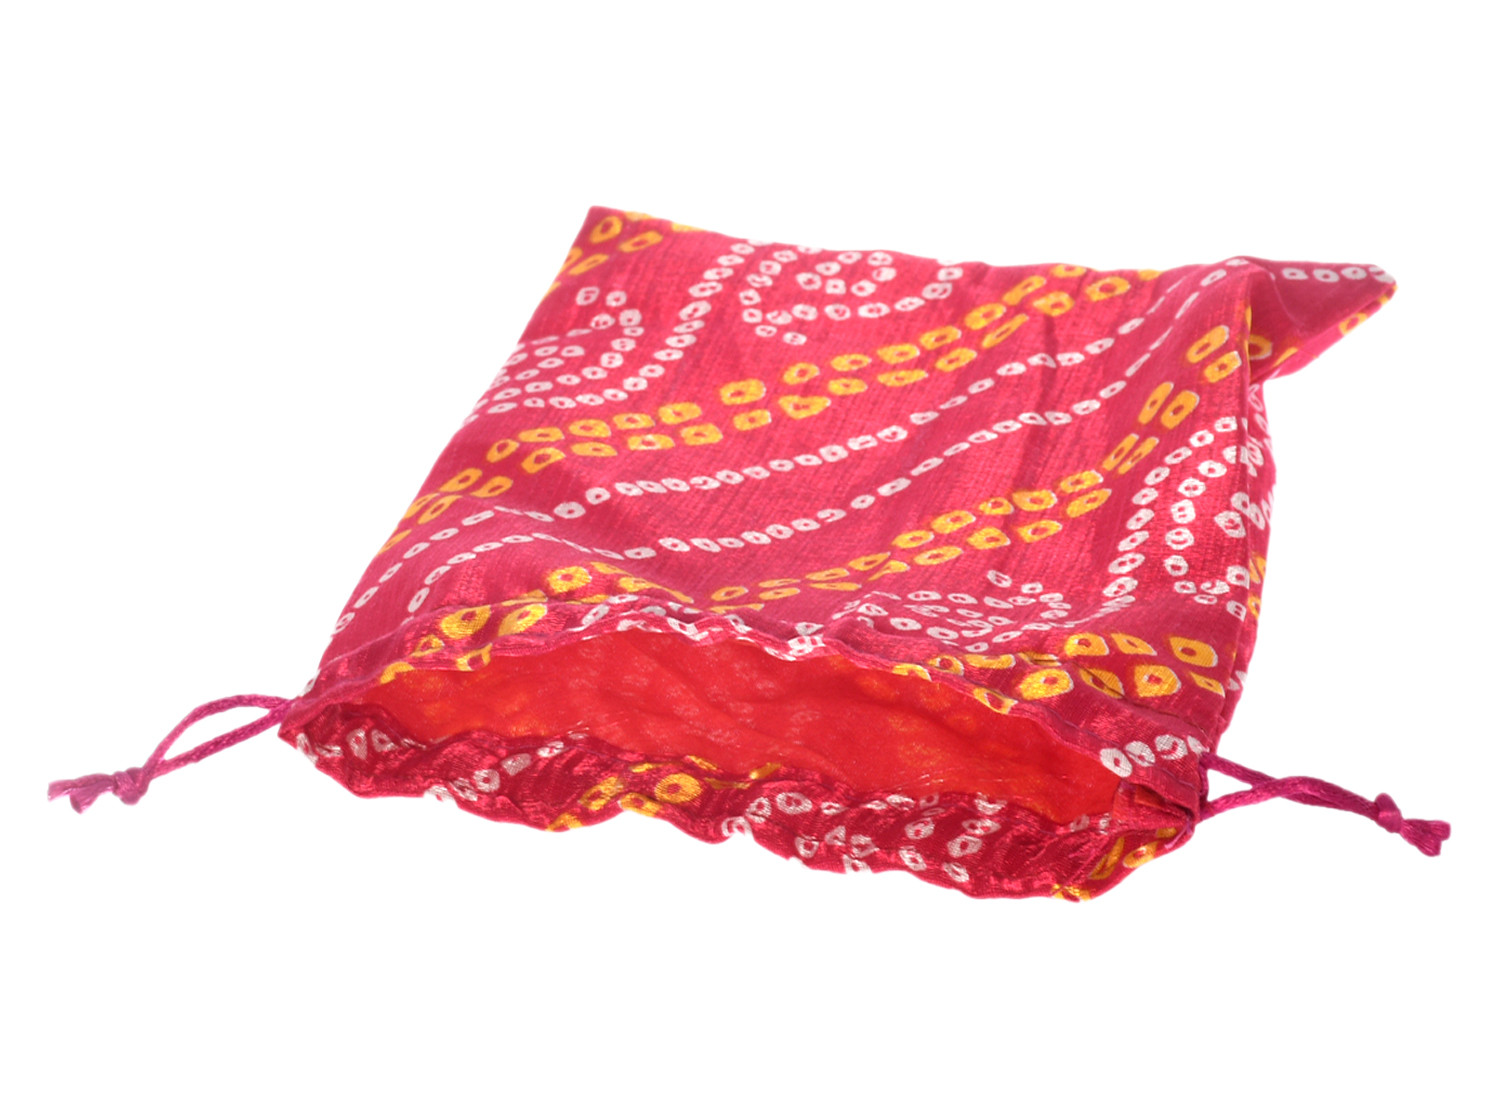 Kuber Industries Multiuses Bandhej Print Potli Bag for women With Drawstring (Pink)